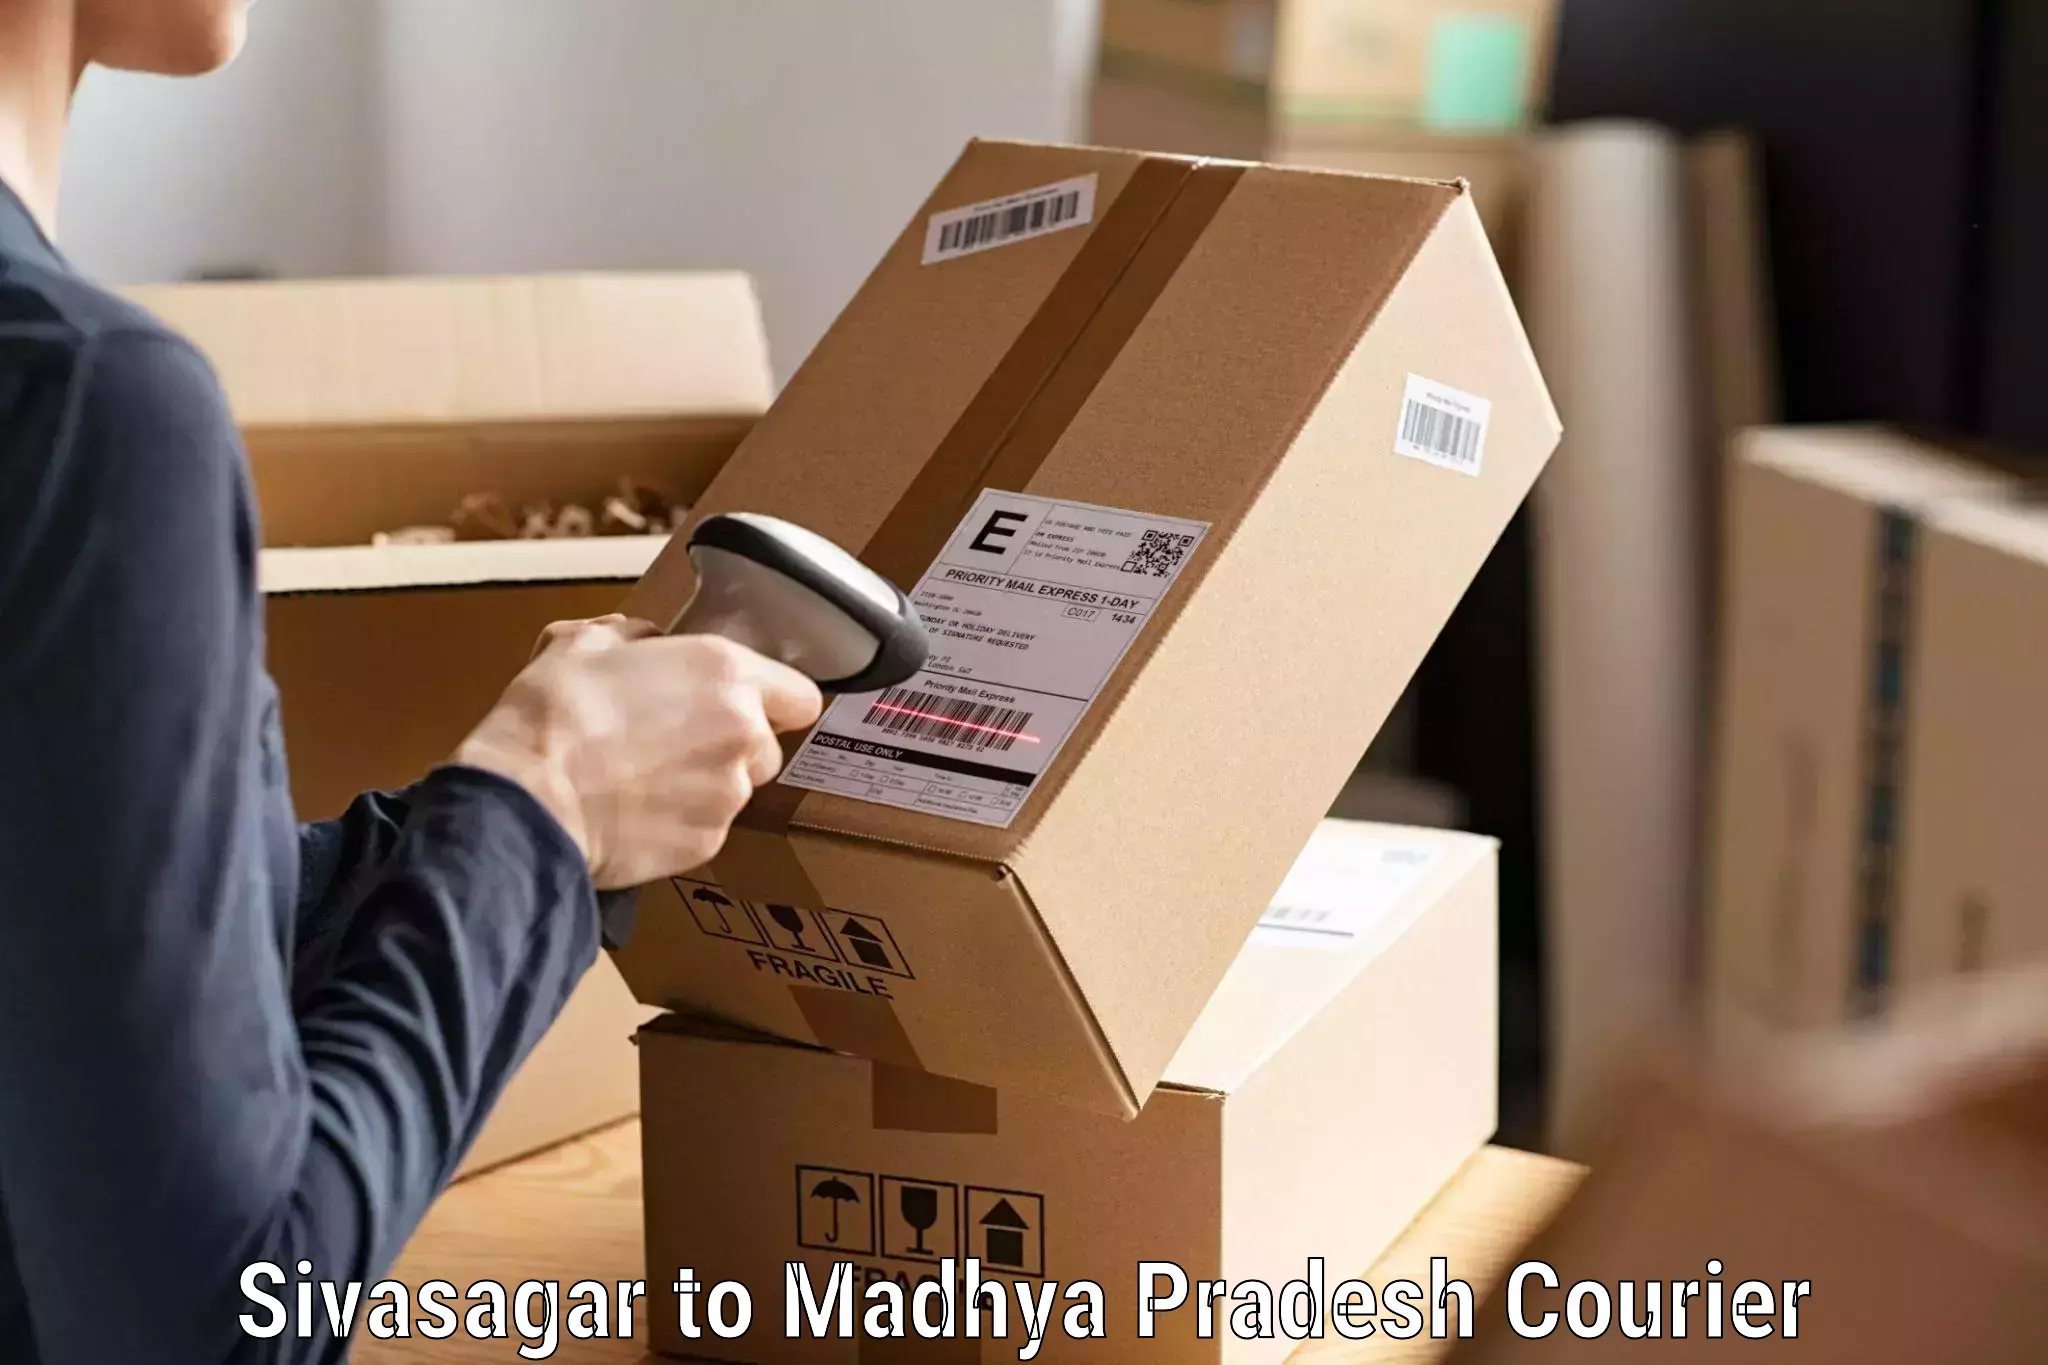 Express delivery capabilities Sivasagar to Sagar